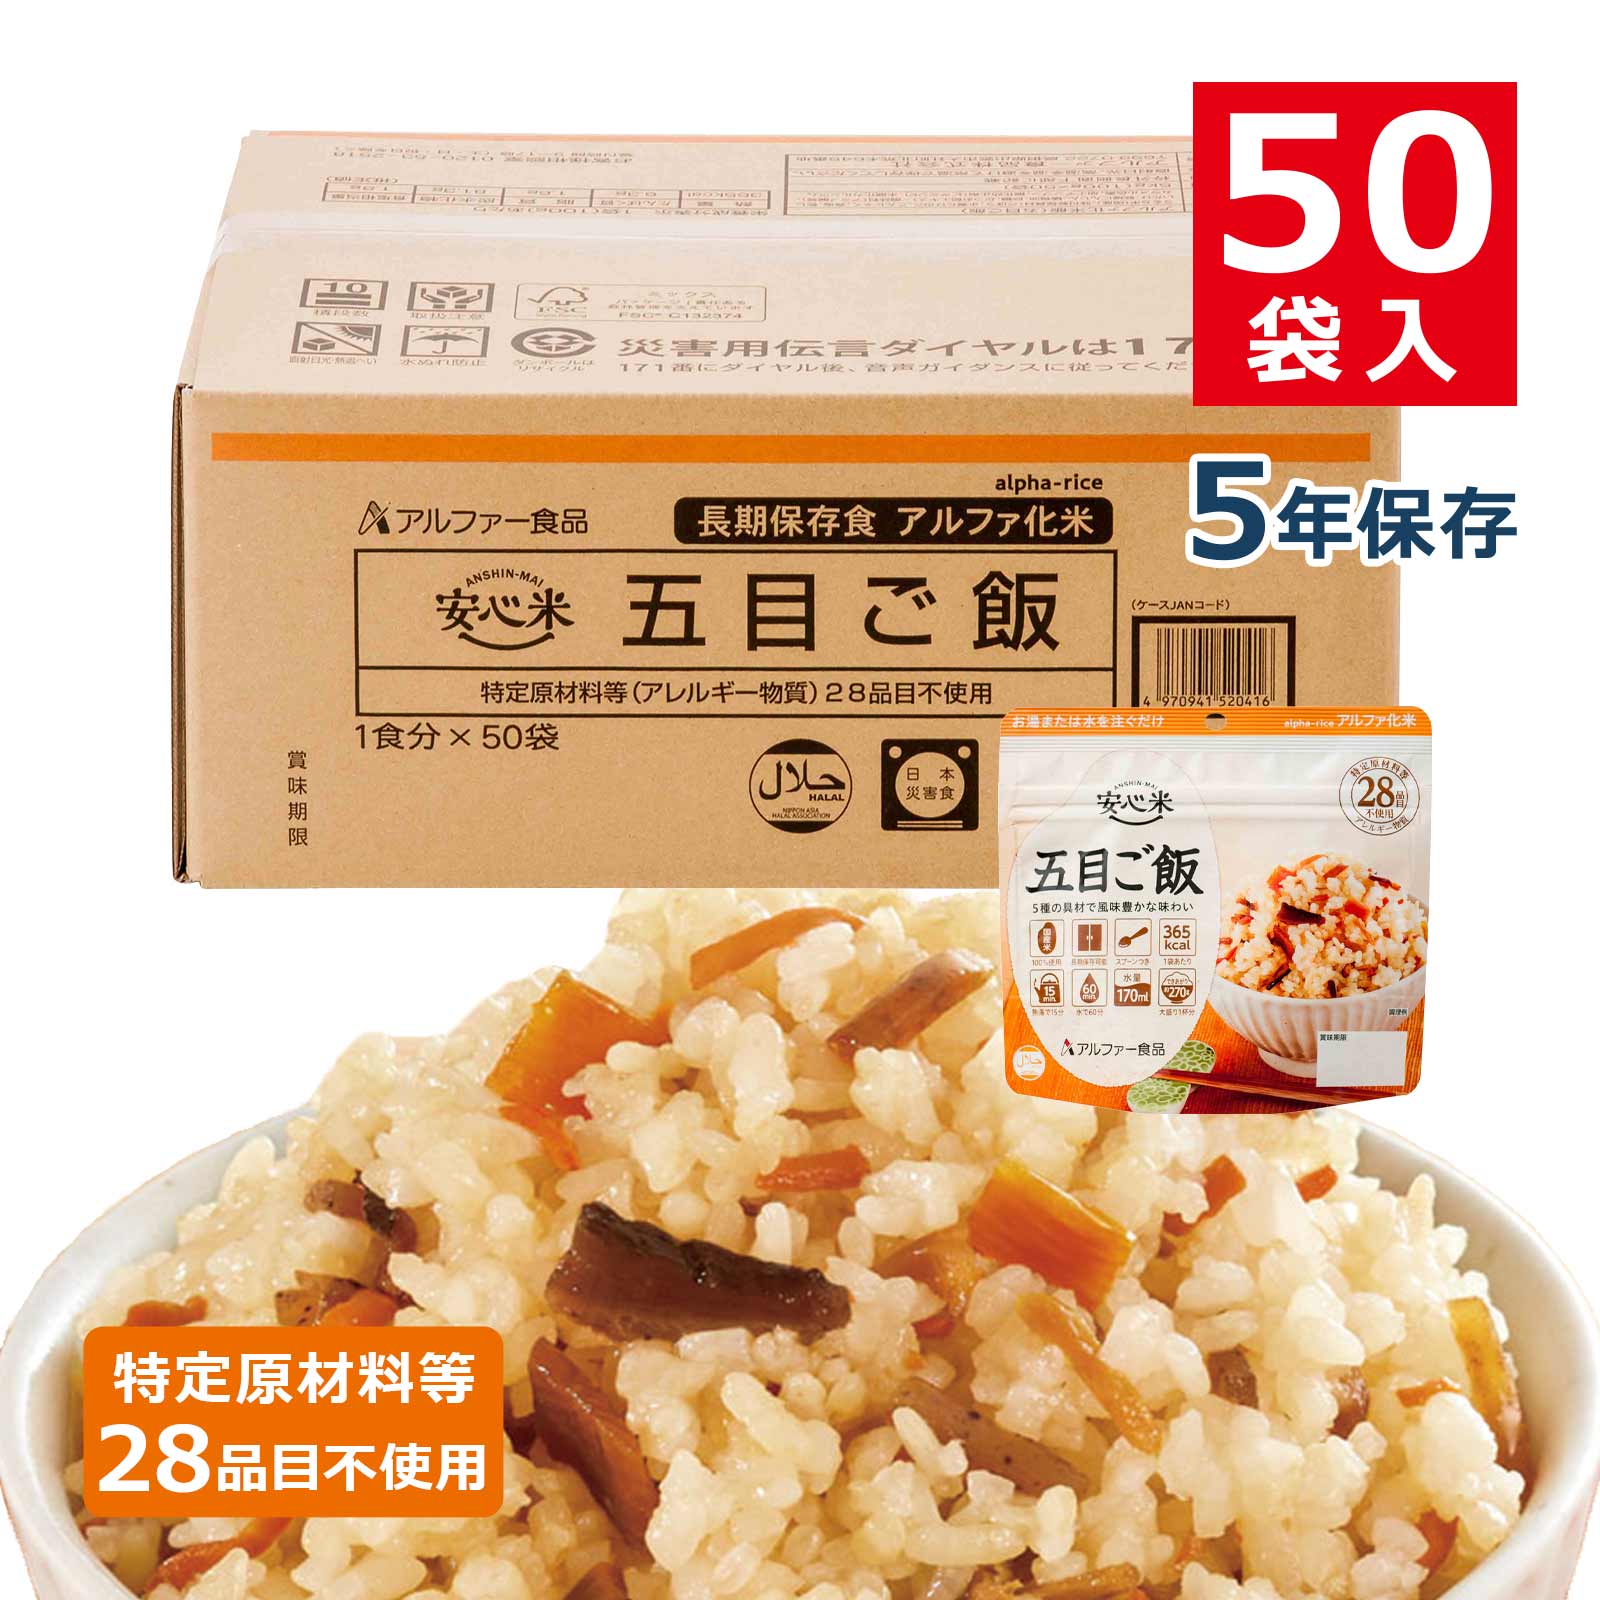 尾西食品 アルファ米「赤飯 50食セット」5年保存食 非常食 アルファー